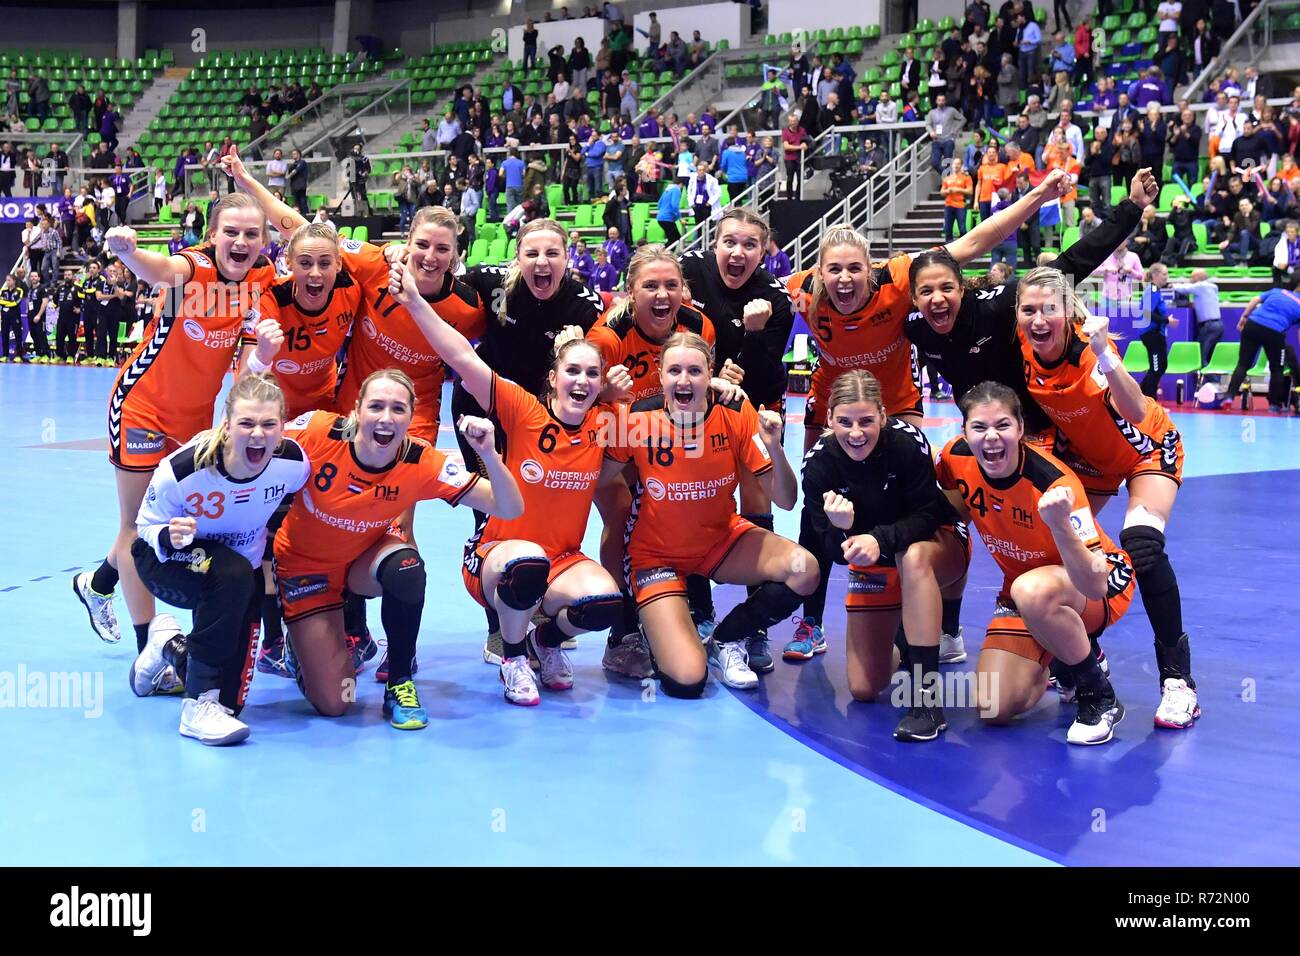 Sport Handball Stockfotos Und Bilder Kaufen Seite 3 Alamy